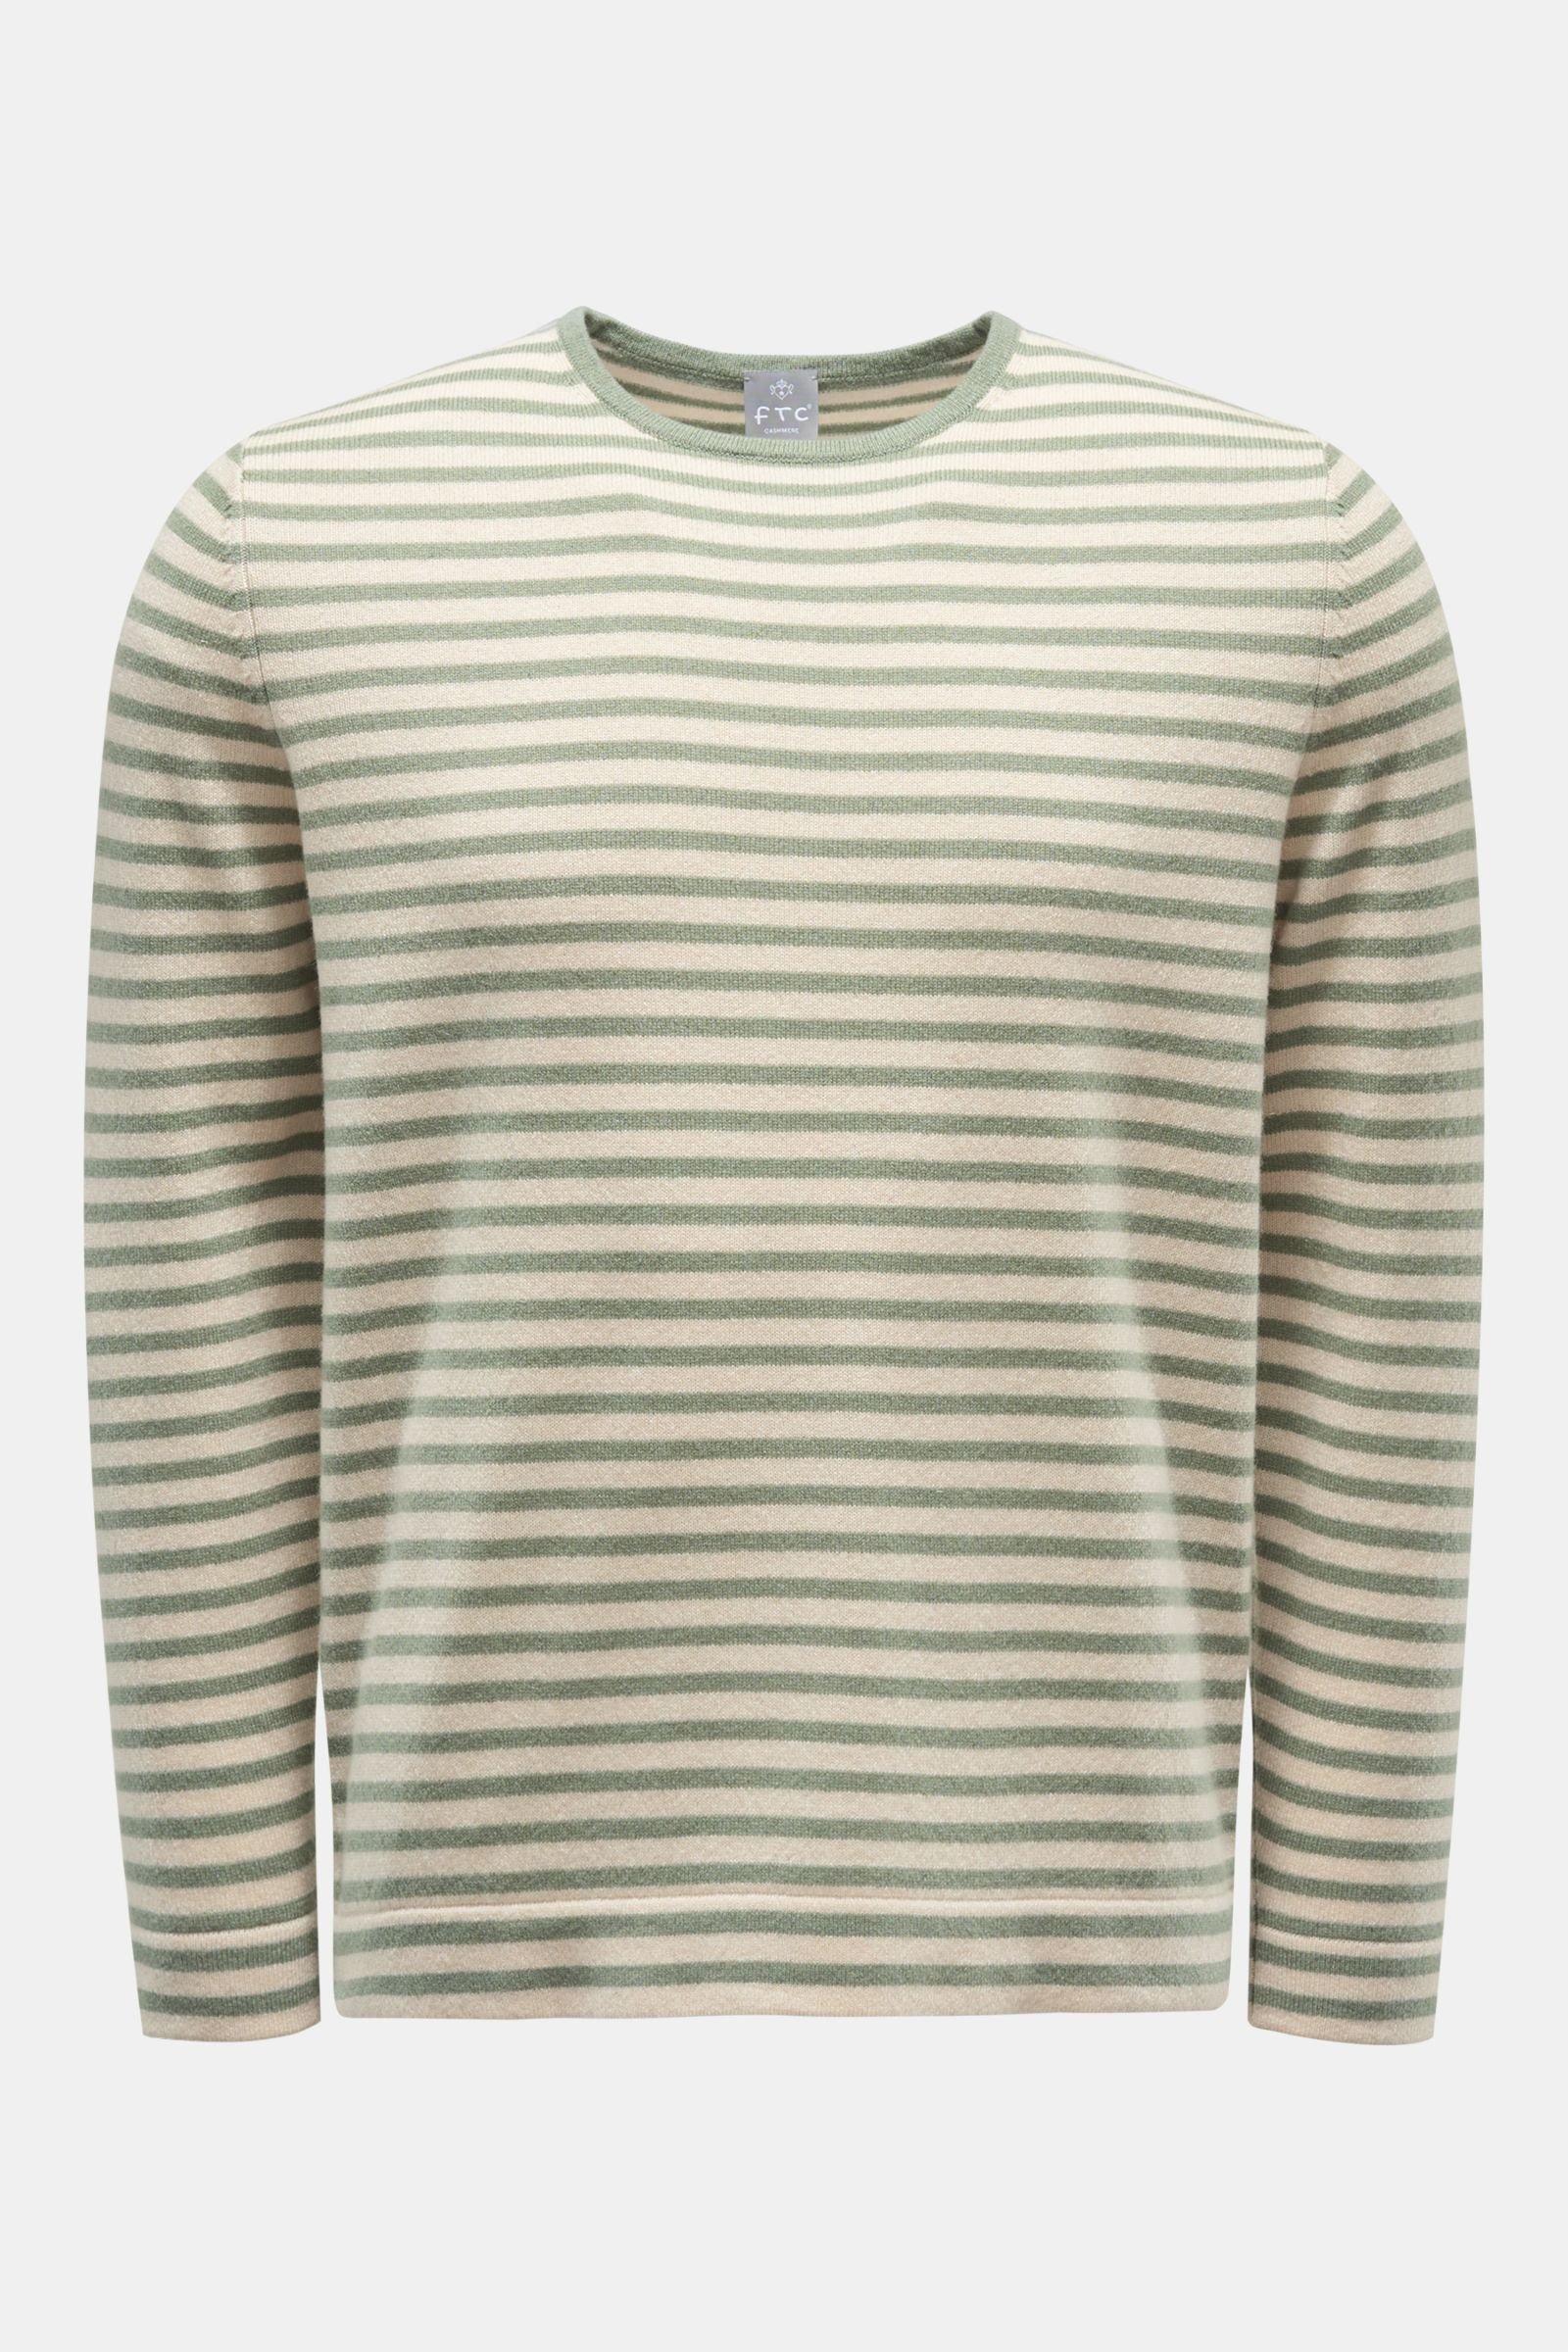 Cashmere Rundhals-Pullover graugrün/beige gestreift